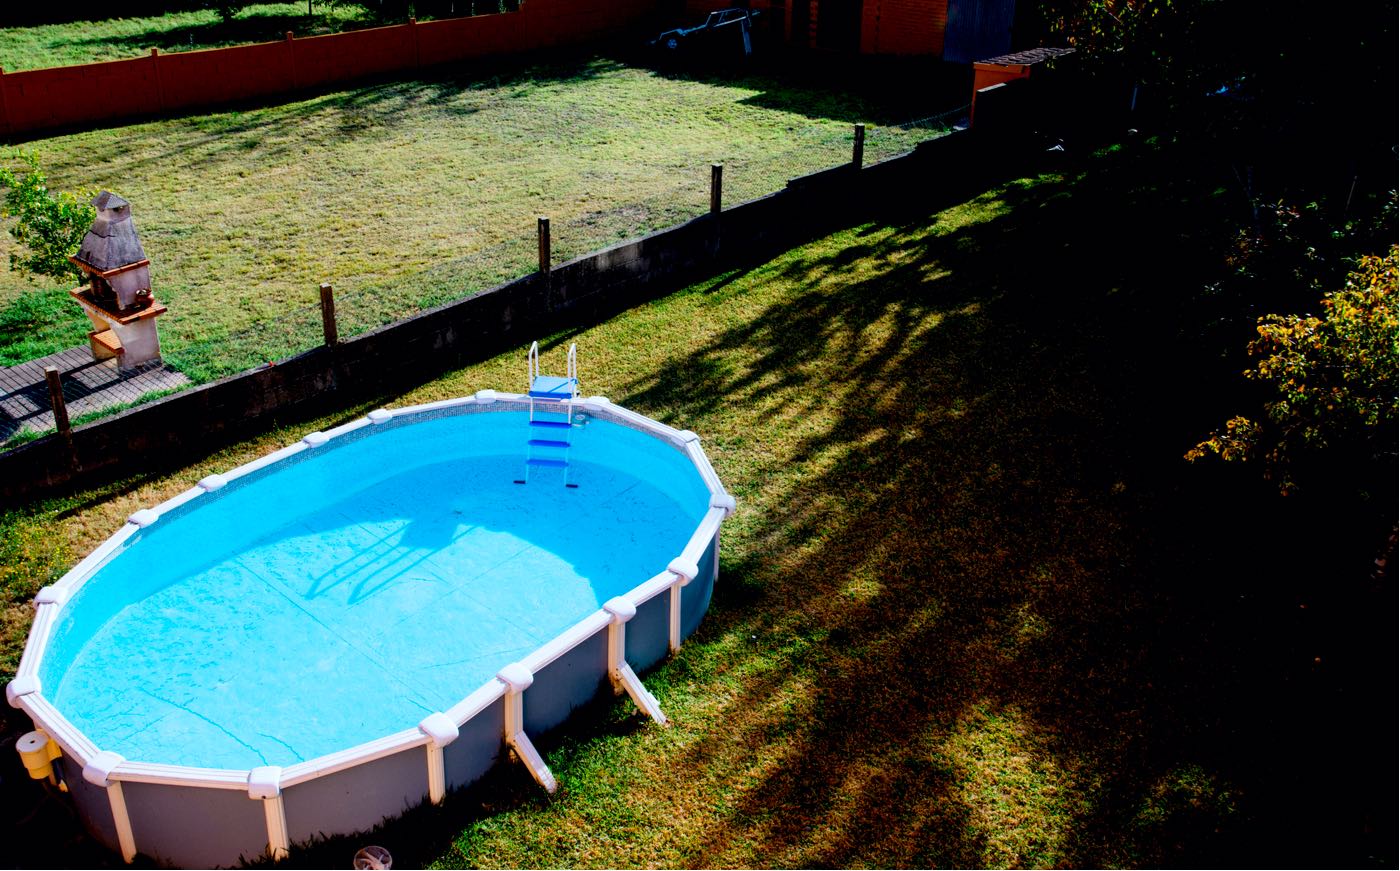 Las principales ventajas de las piscinas desmontables, según Piscinadesmontable.eu